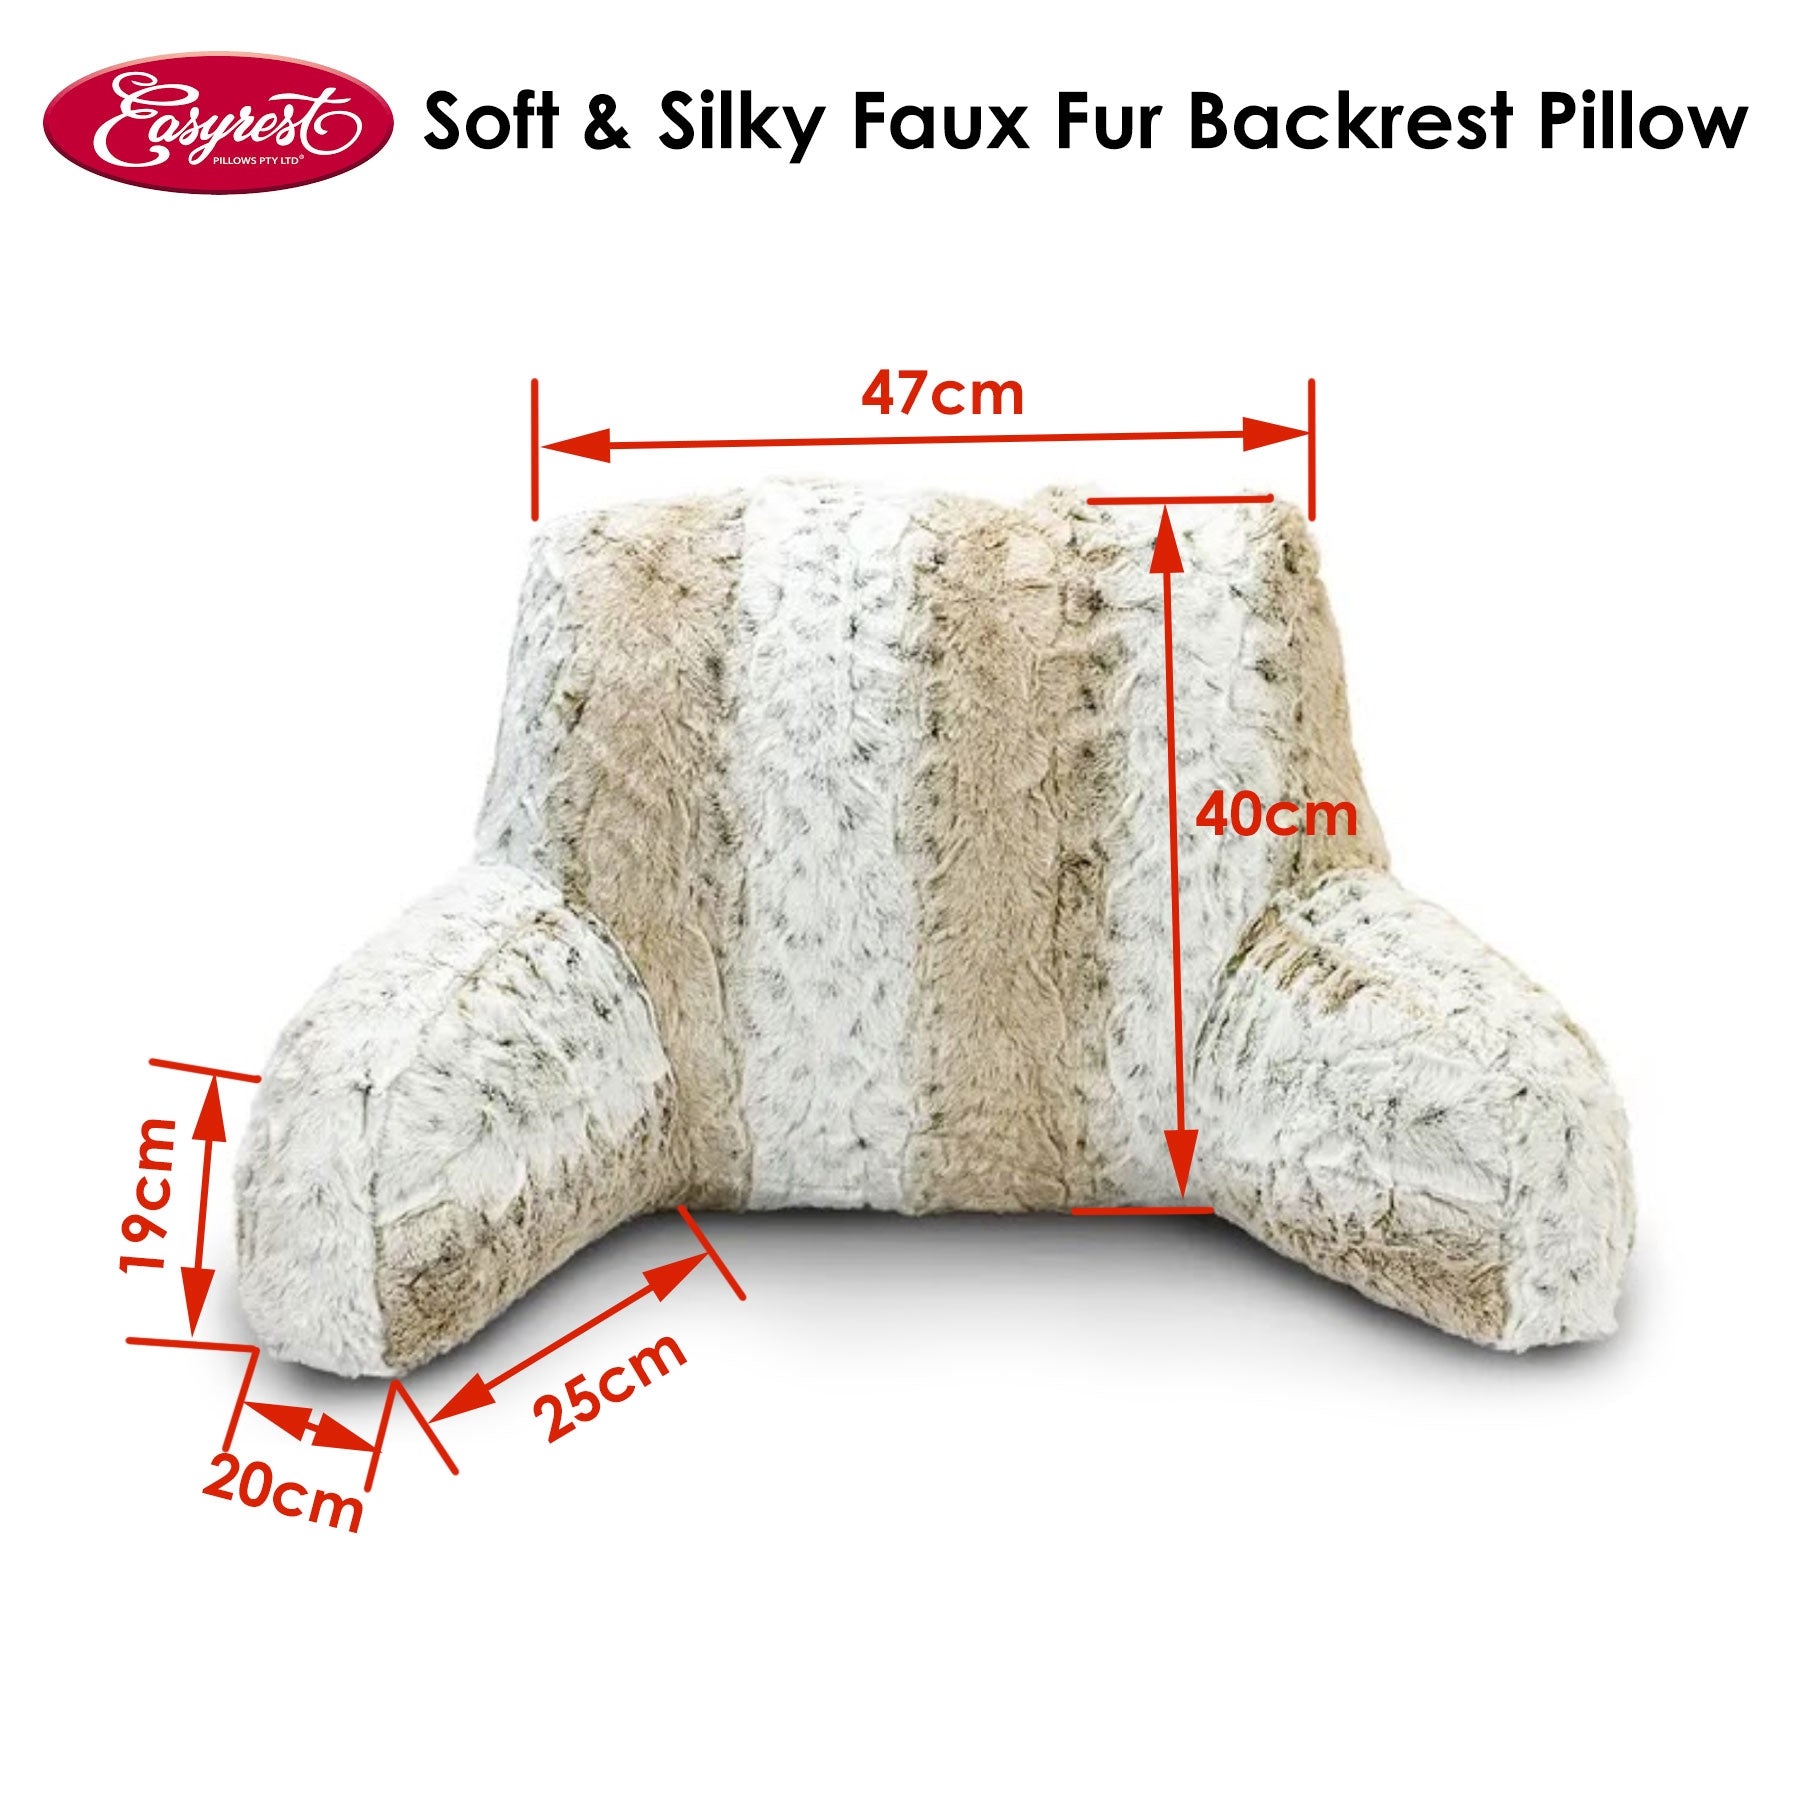 Soft & Silky Faux Fur Backrest Pillow